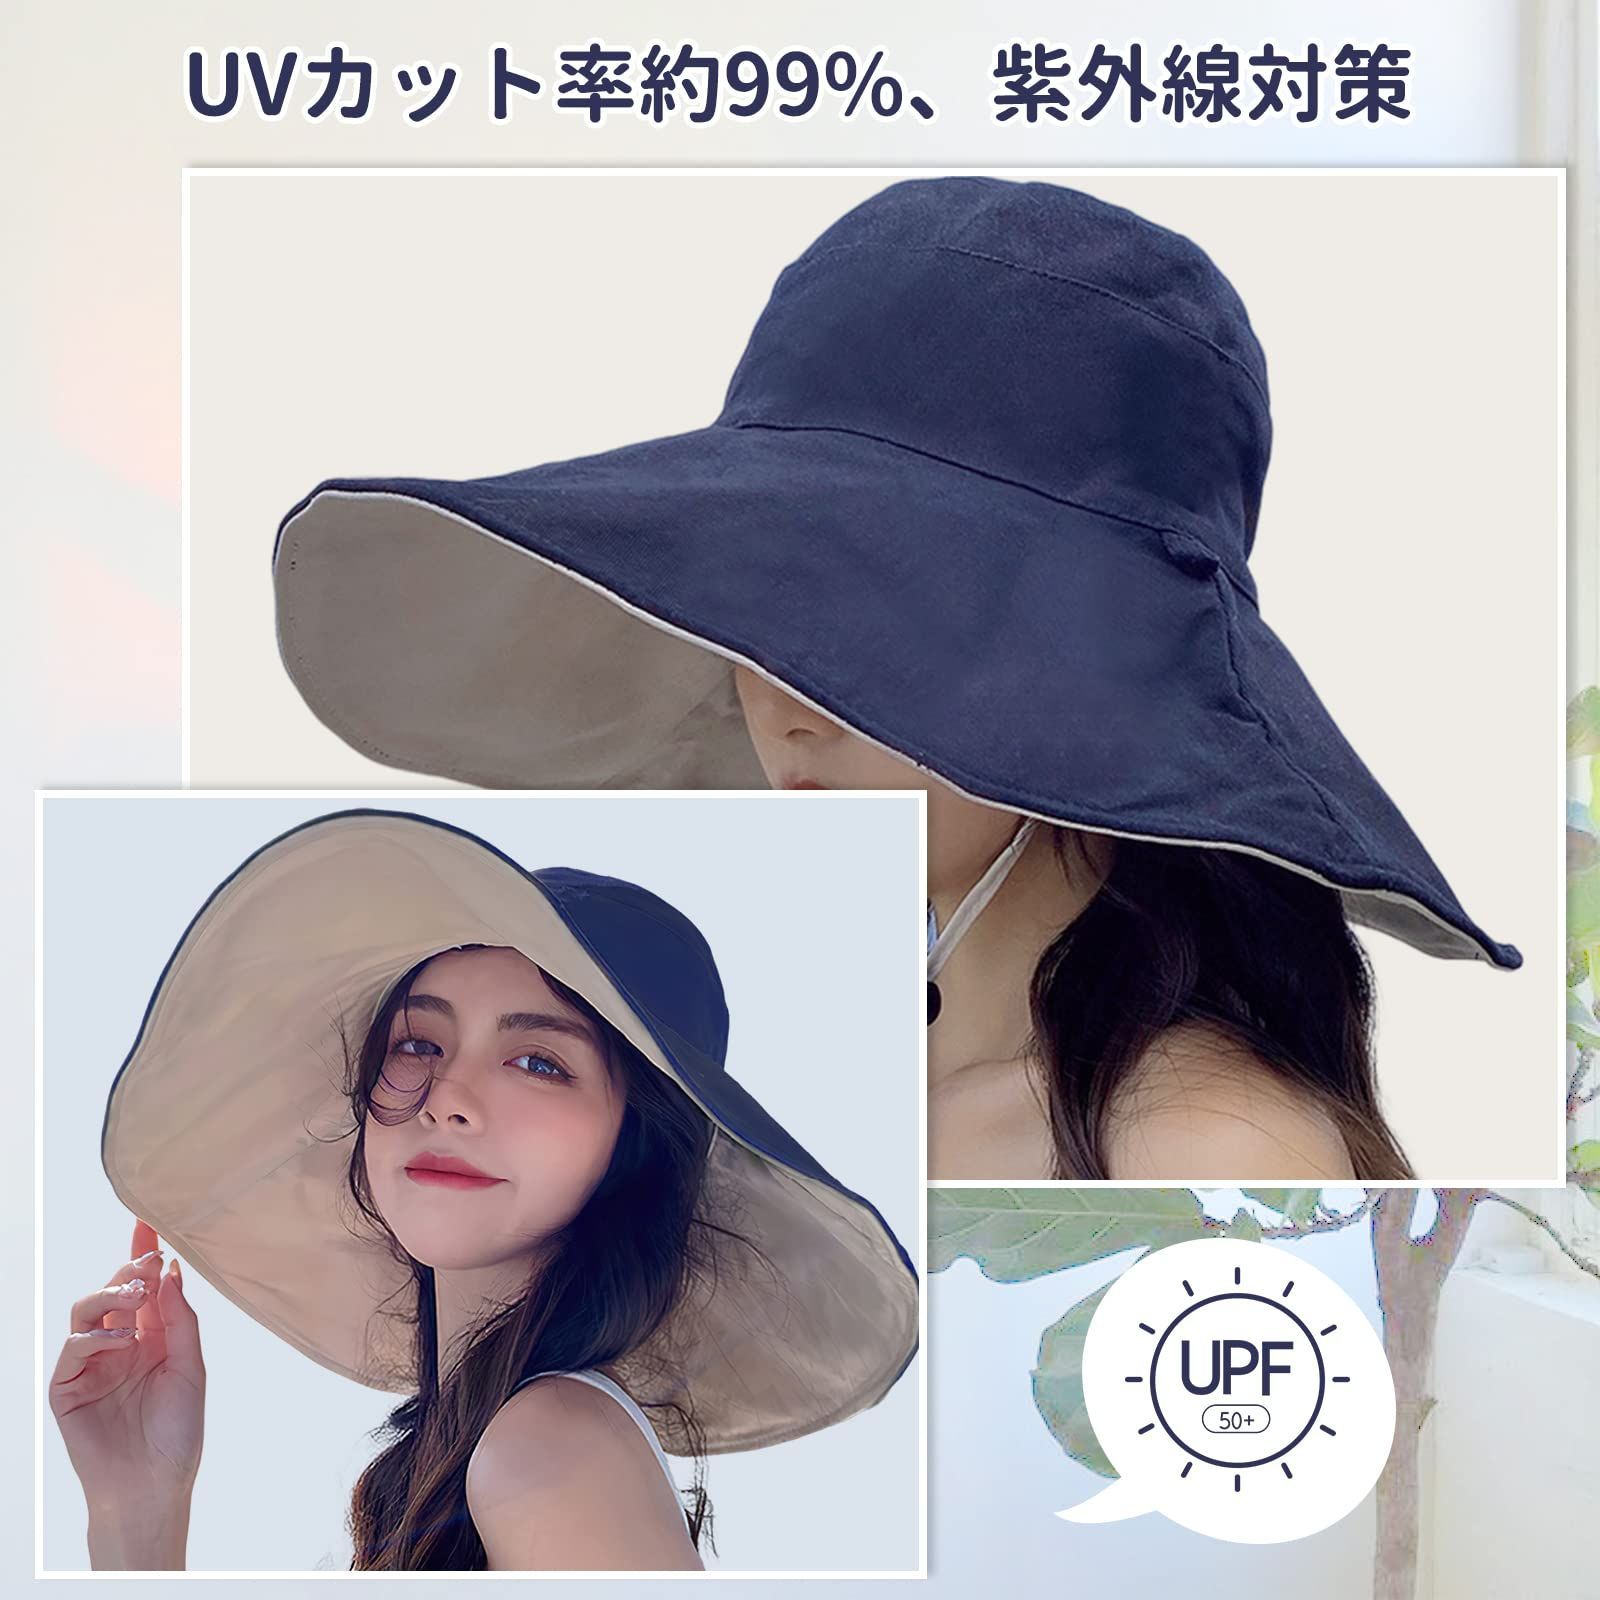 【色: ブラック】Candybay UVカット 帽子 レディース つば広帽子 U